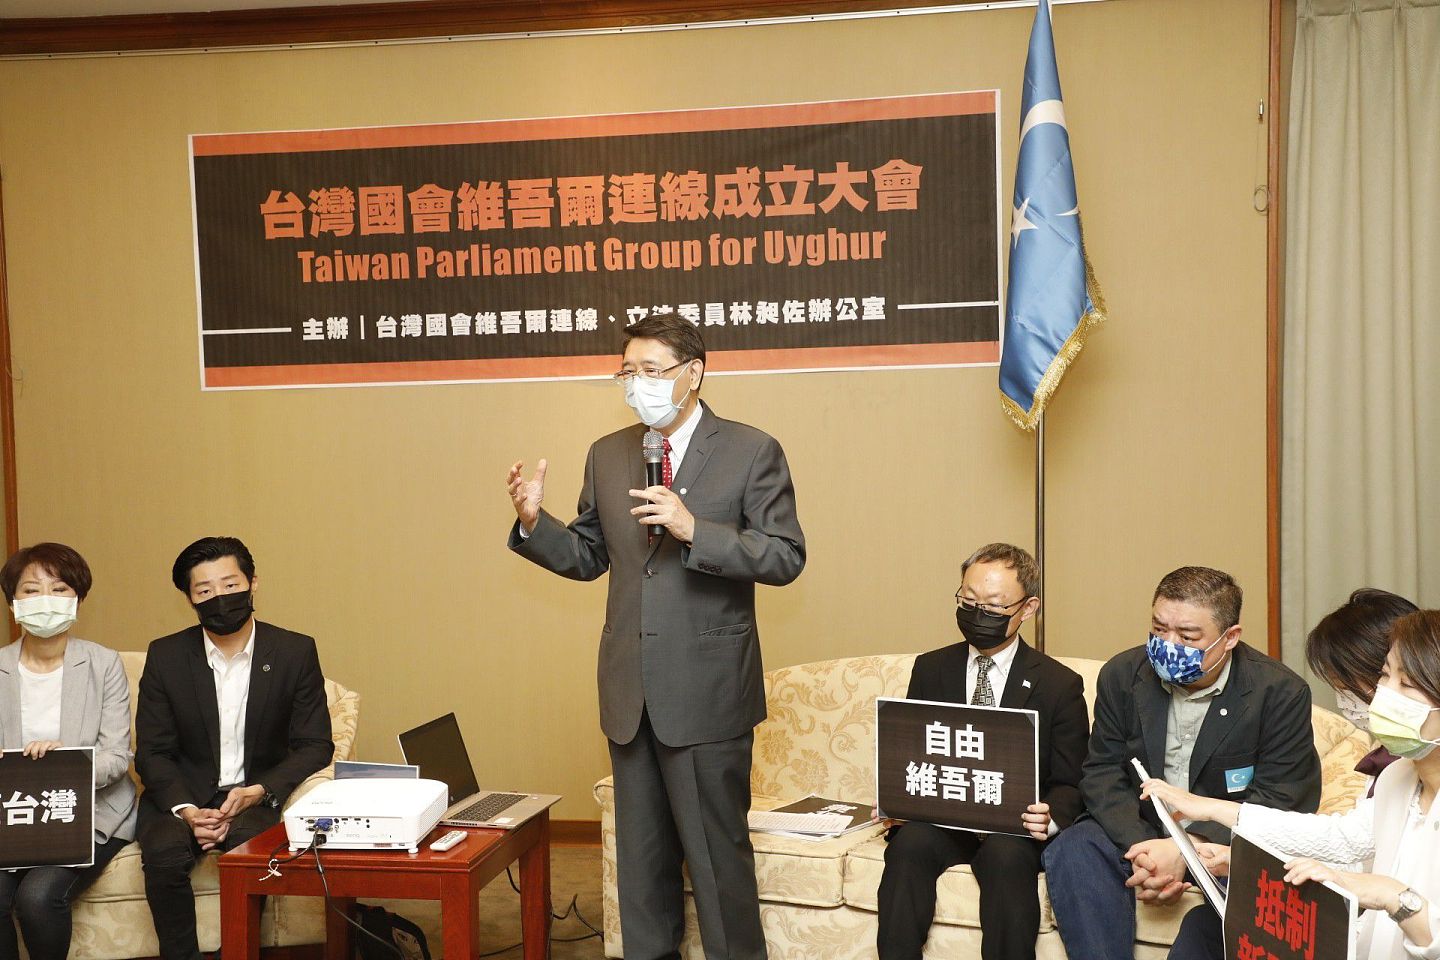 2021年4月23日台湾立法院成立“台湾国会维吾尔连线”，该院秘书长林志嘉（中）表示，台湾立法院现在在世界的曝光度、重要性都越来越被重视，民主台湾必须对中国政权压迫人民提出强烈抗议，期盼能帮助维吾尔人早日脱离困境。（多维新闻）